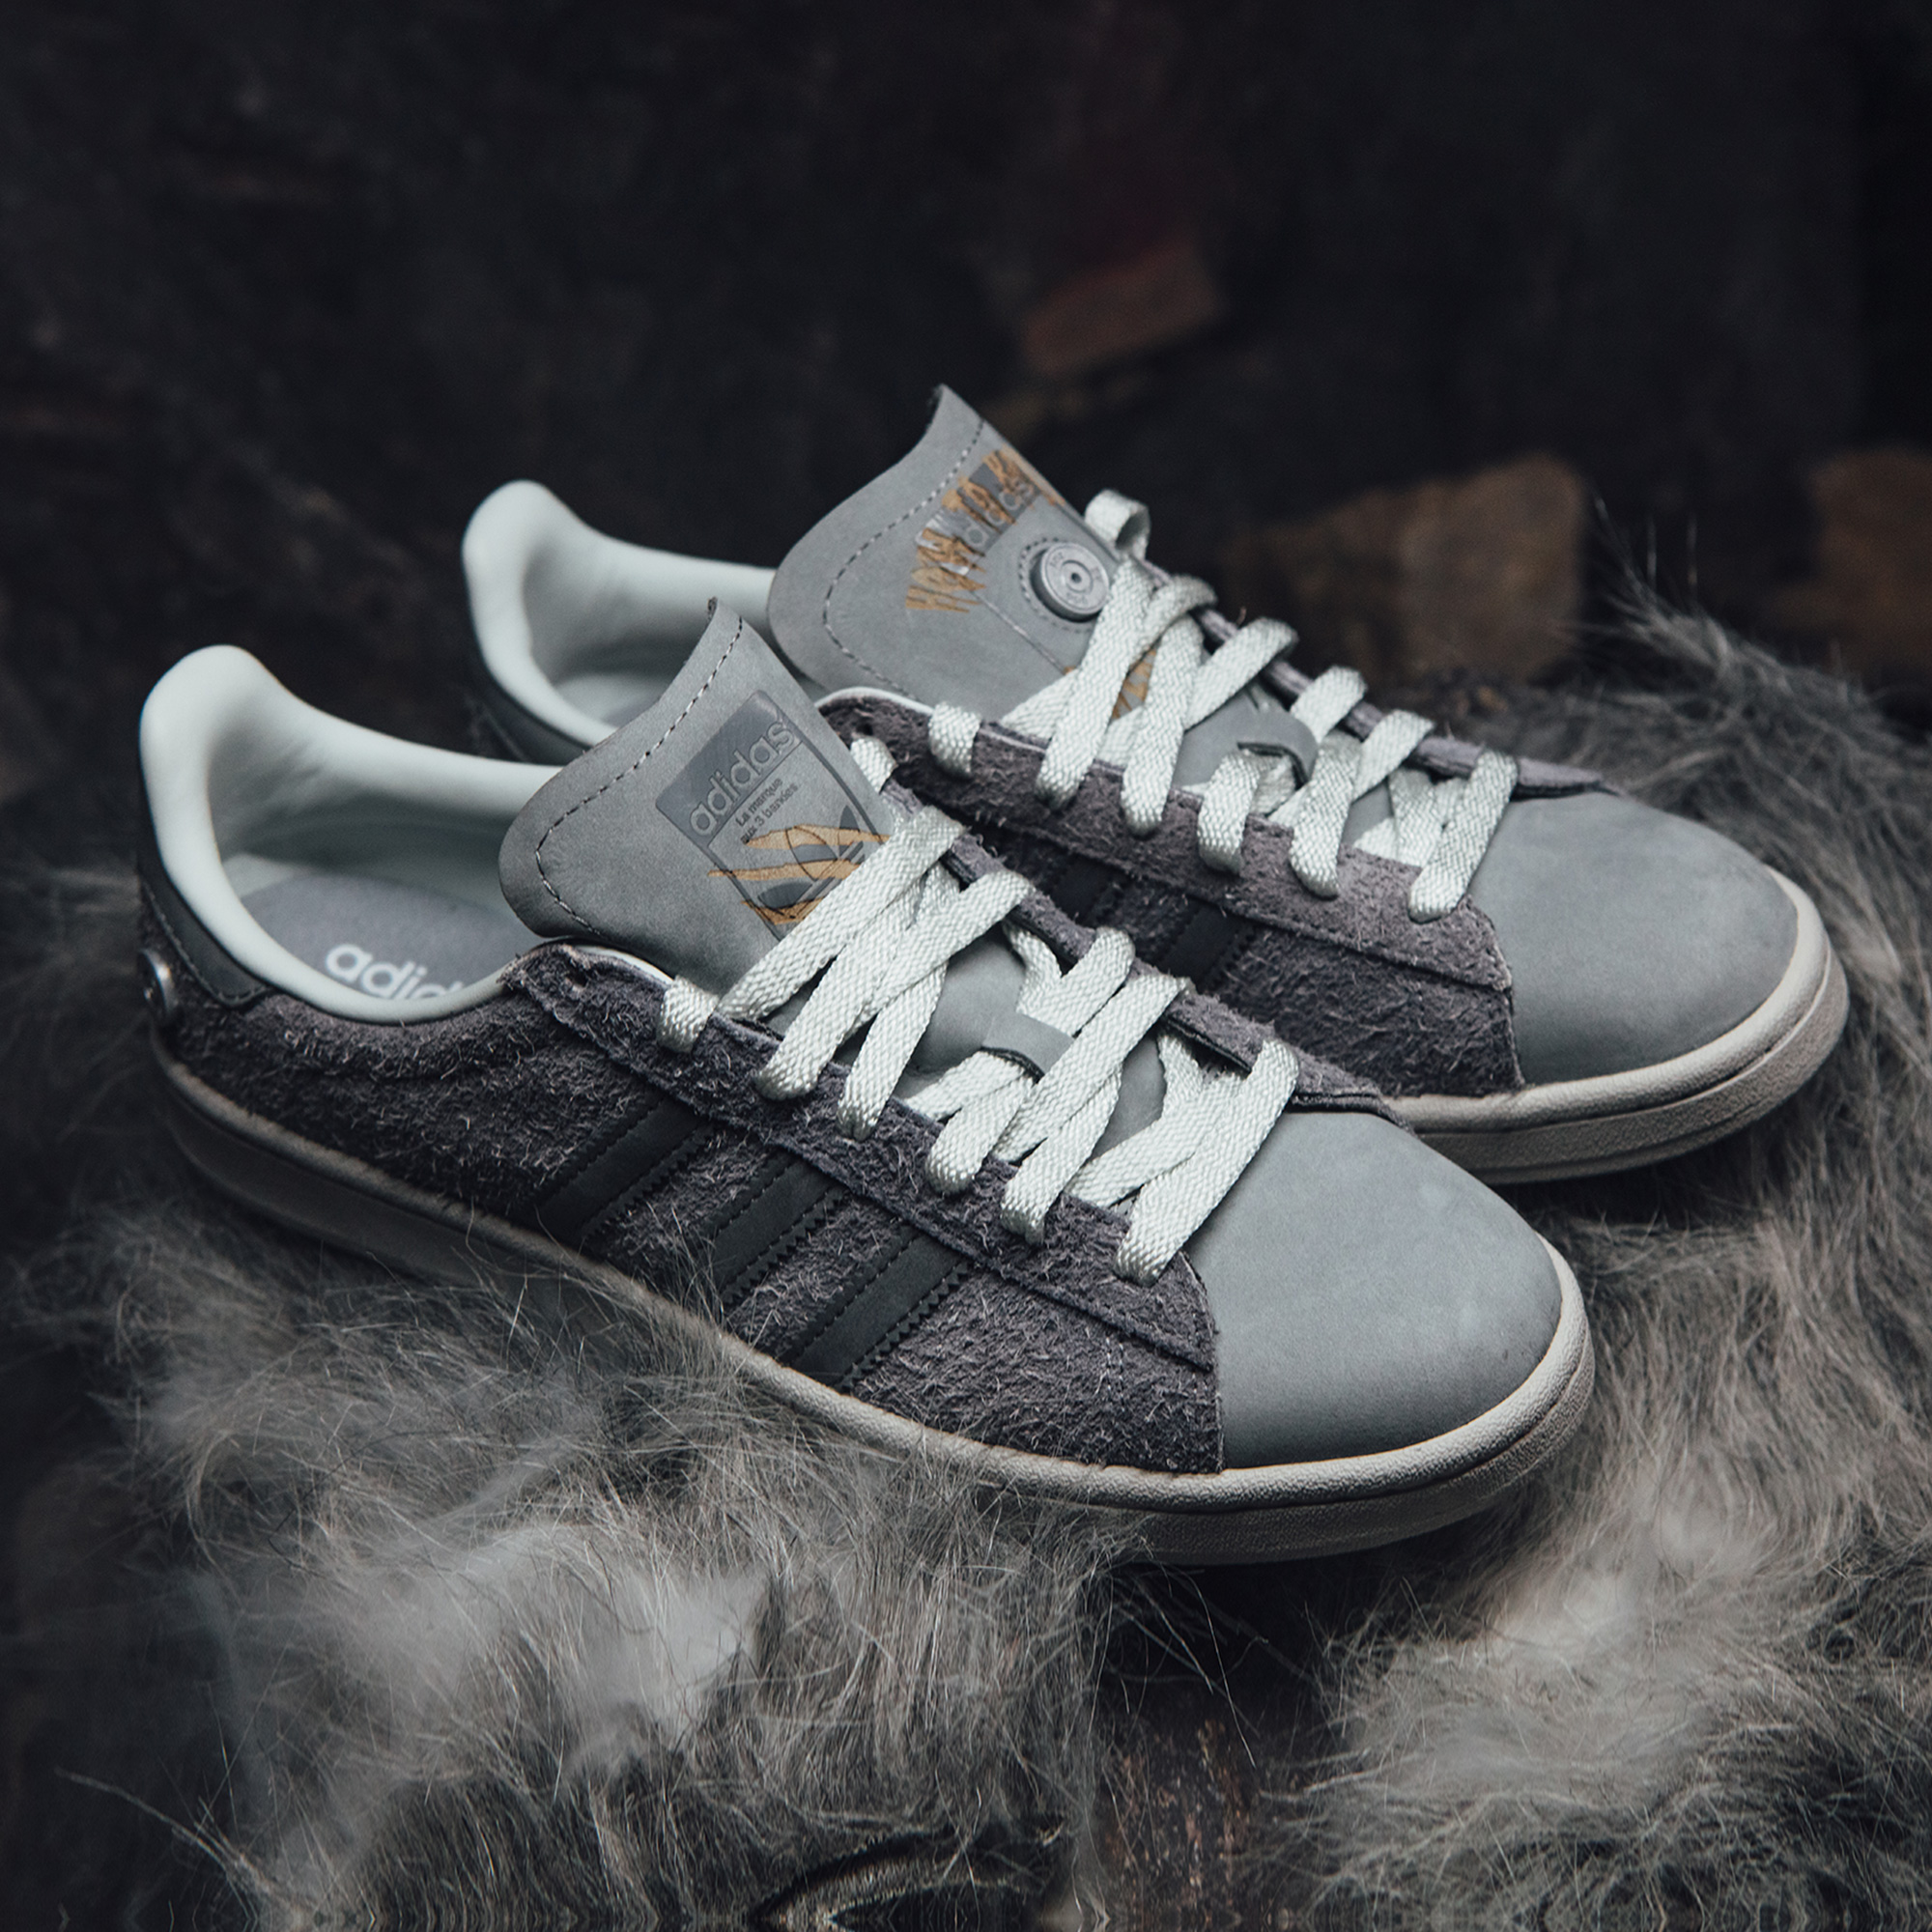 CAMPUS 80S 運動鞋- 灰色| 女子,男子| adidas(愛迪達)香港官方網上商店